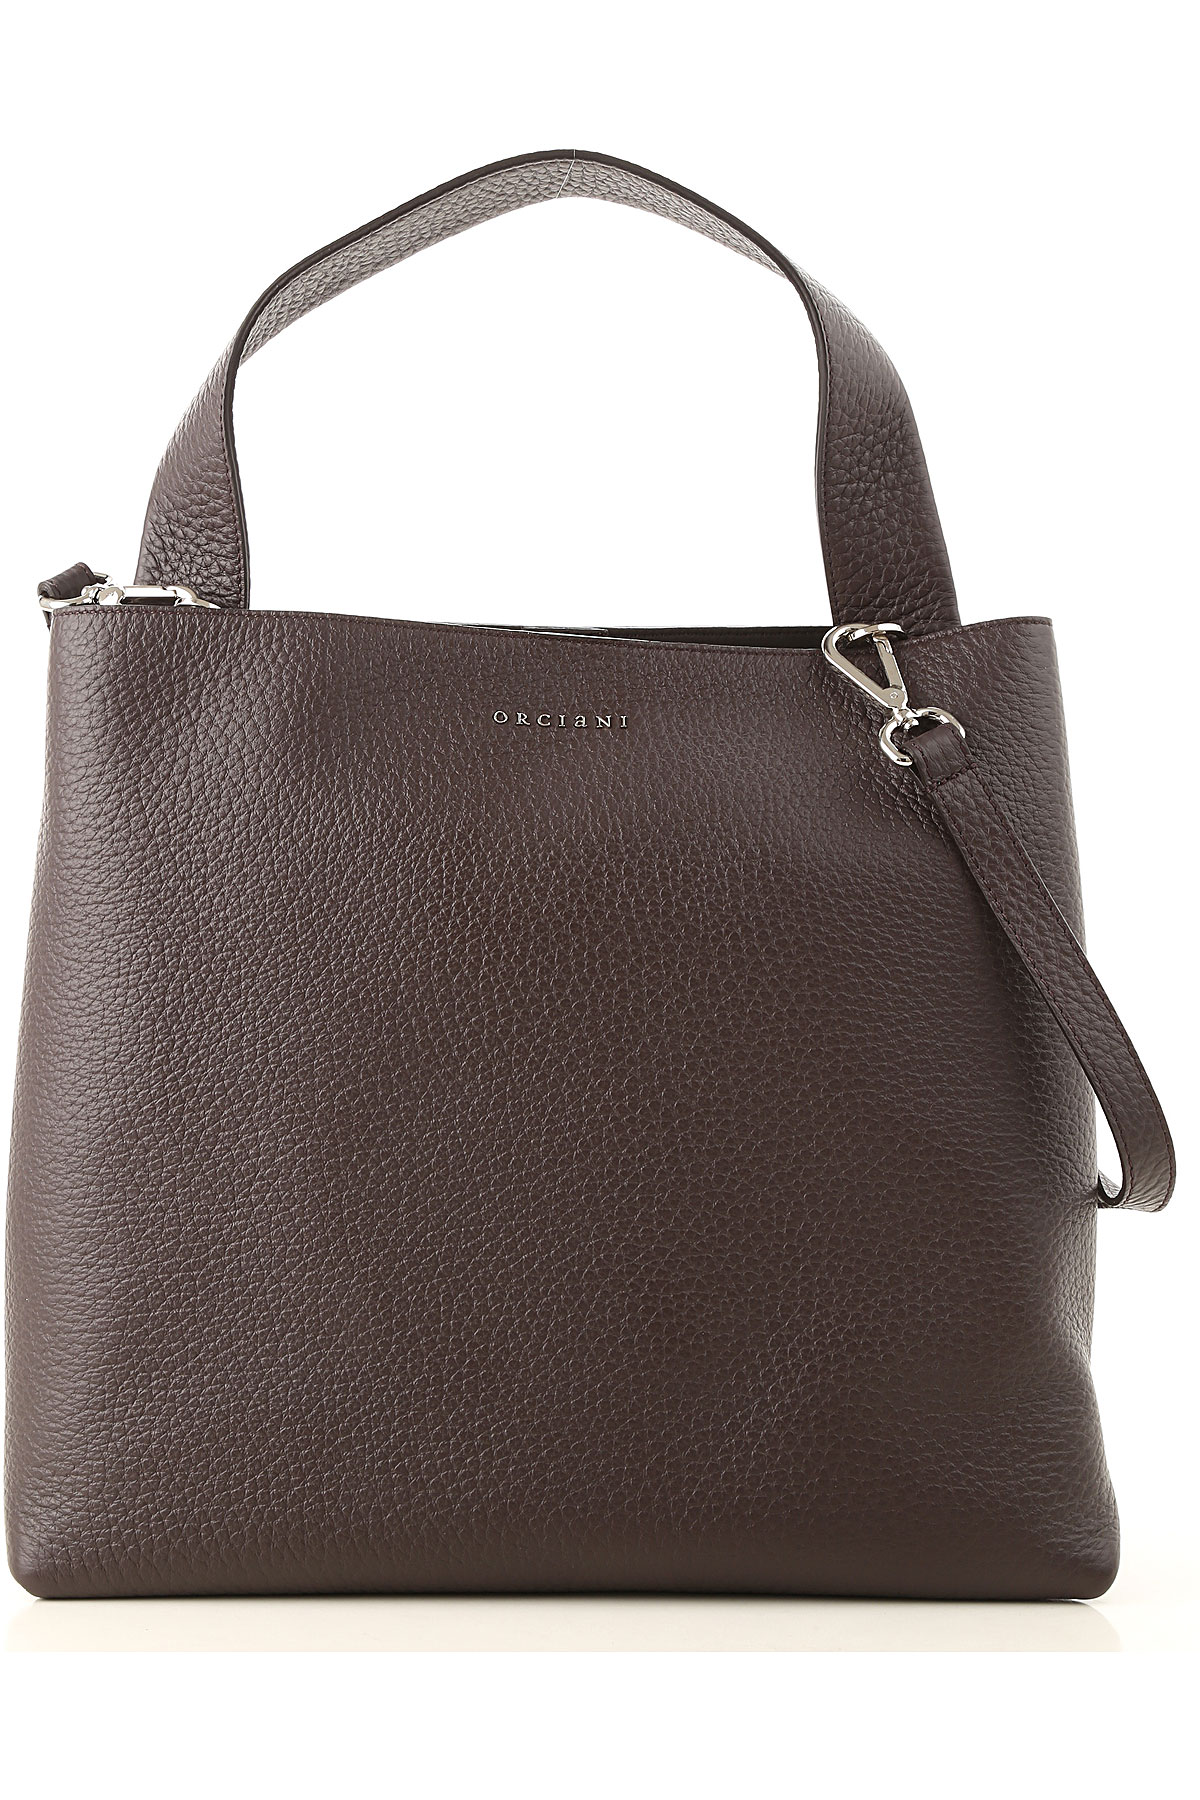 Handbags Orciani, Style code: b2031-jackie-moro